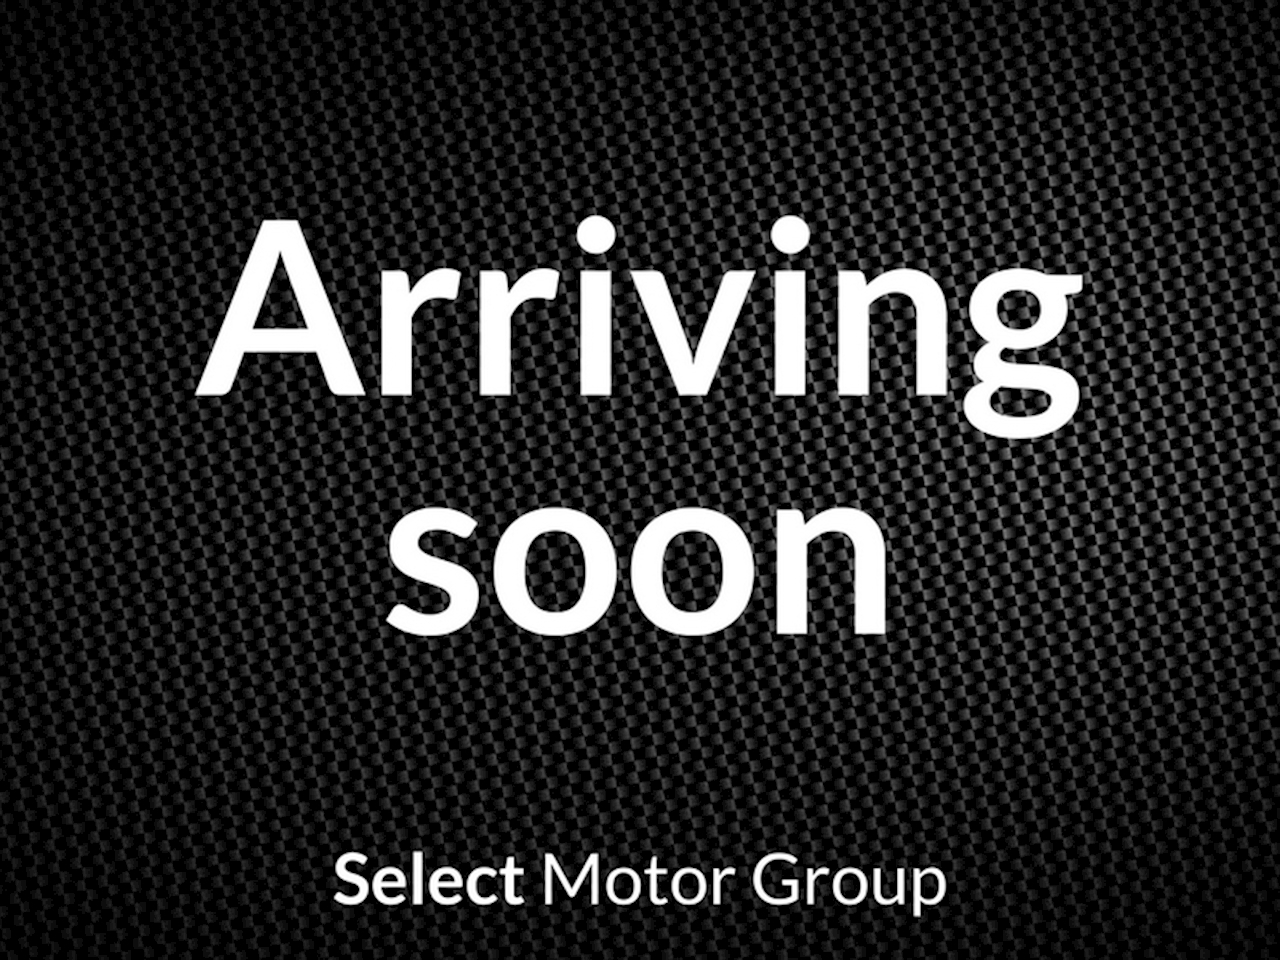 Glc-Class GLC 250 D 4Matic Sport Premium Plus 2.1 4dr Coupe Automatic Diesel